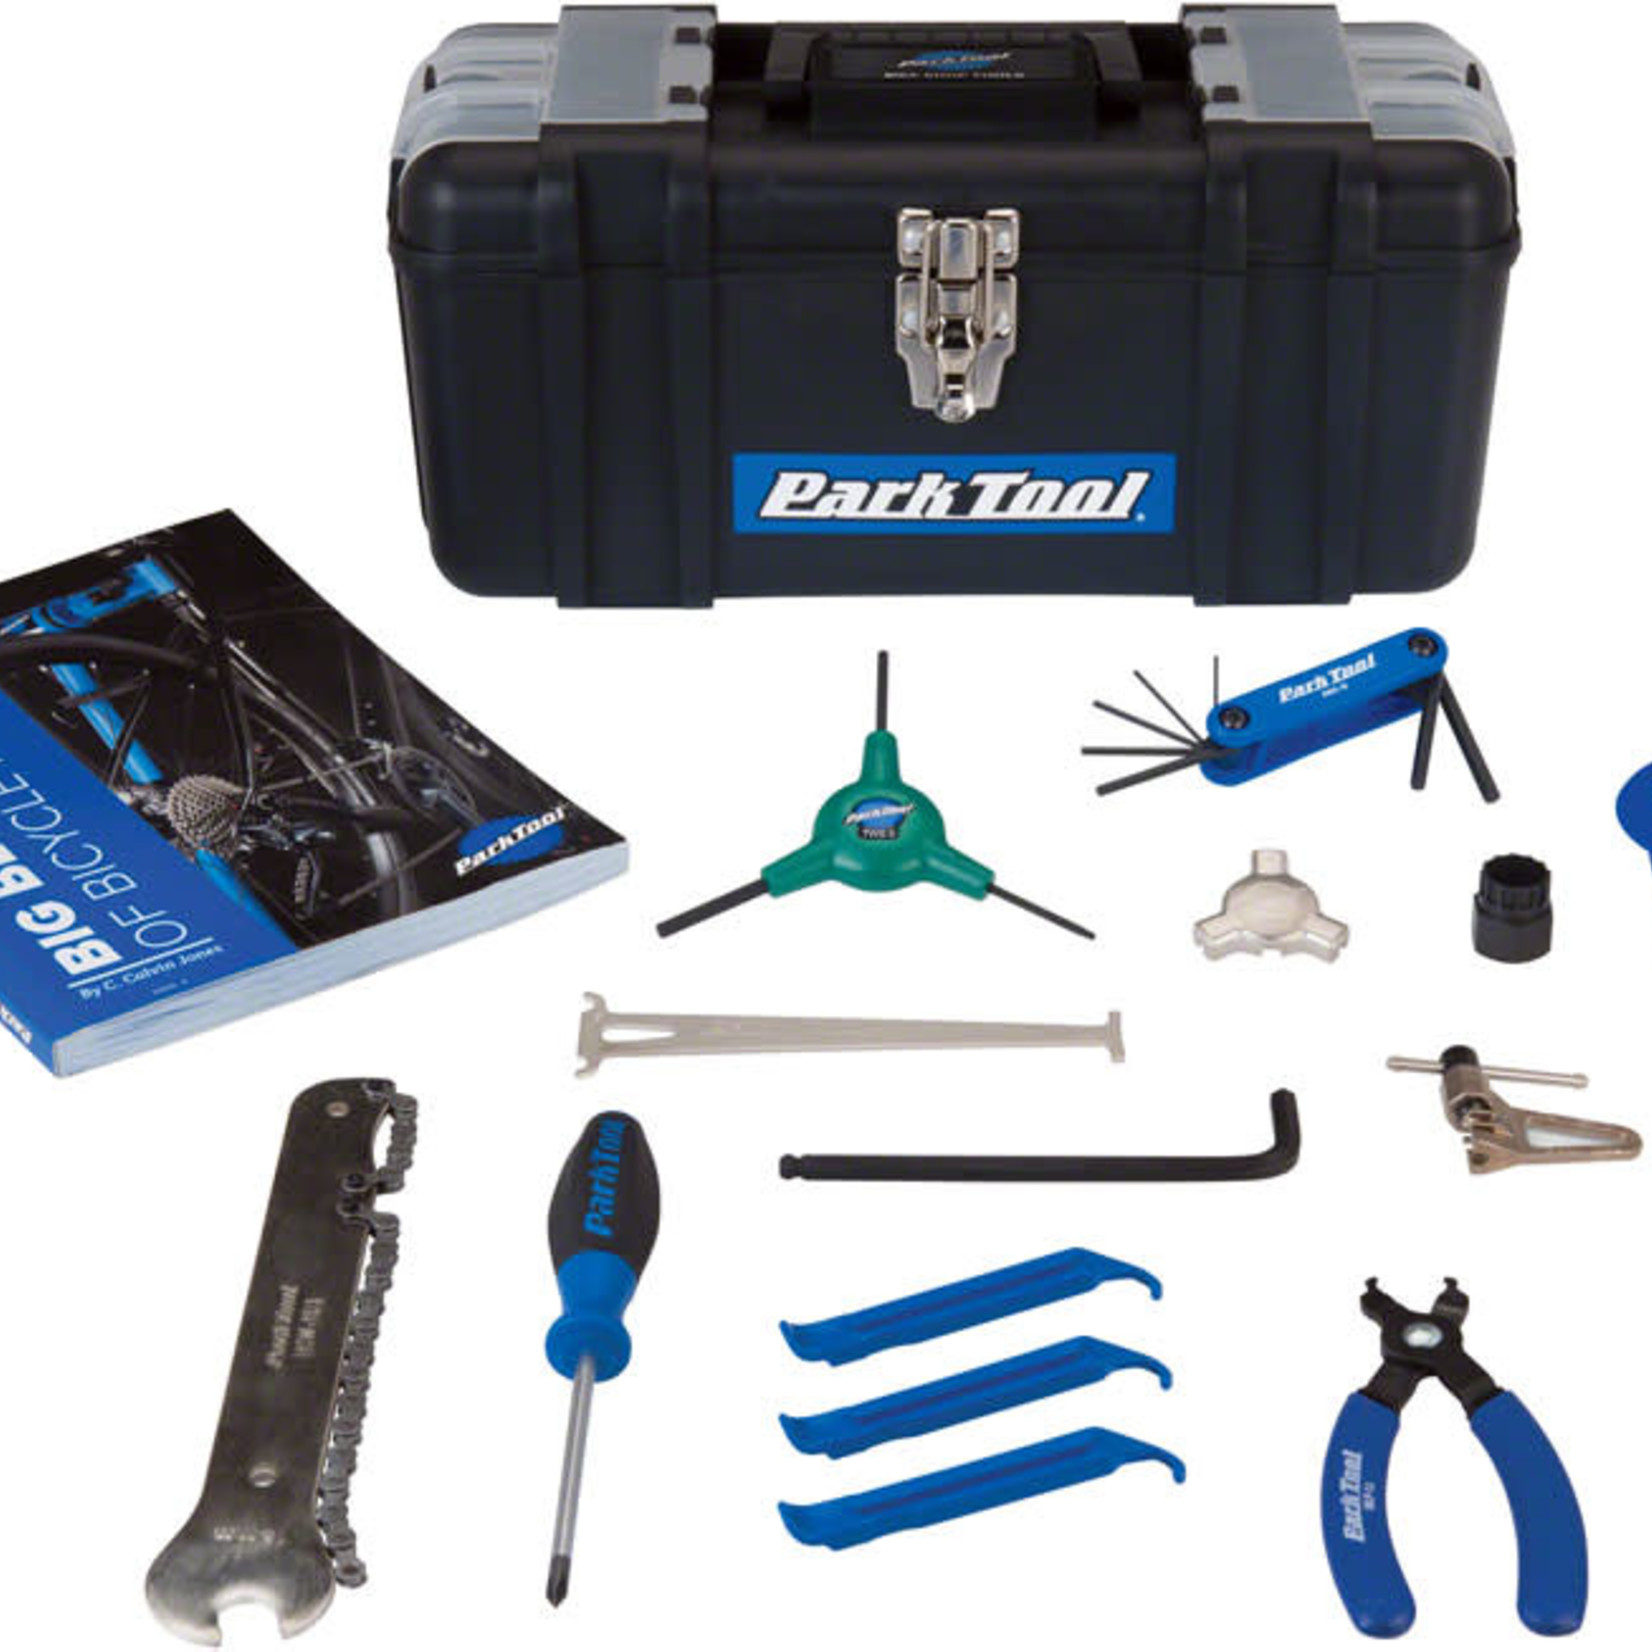 PARK TOOL Park Tool SK-4 Home Mechanic Starter Kit